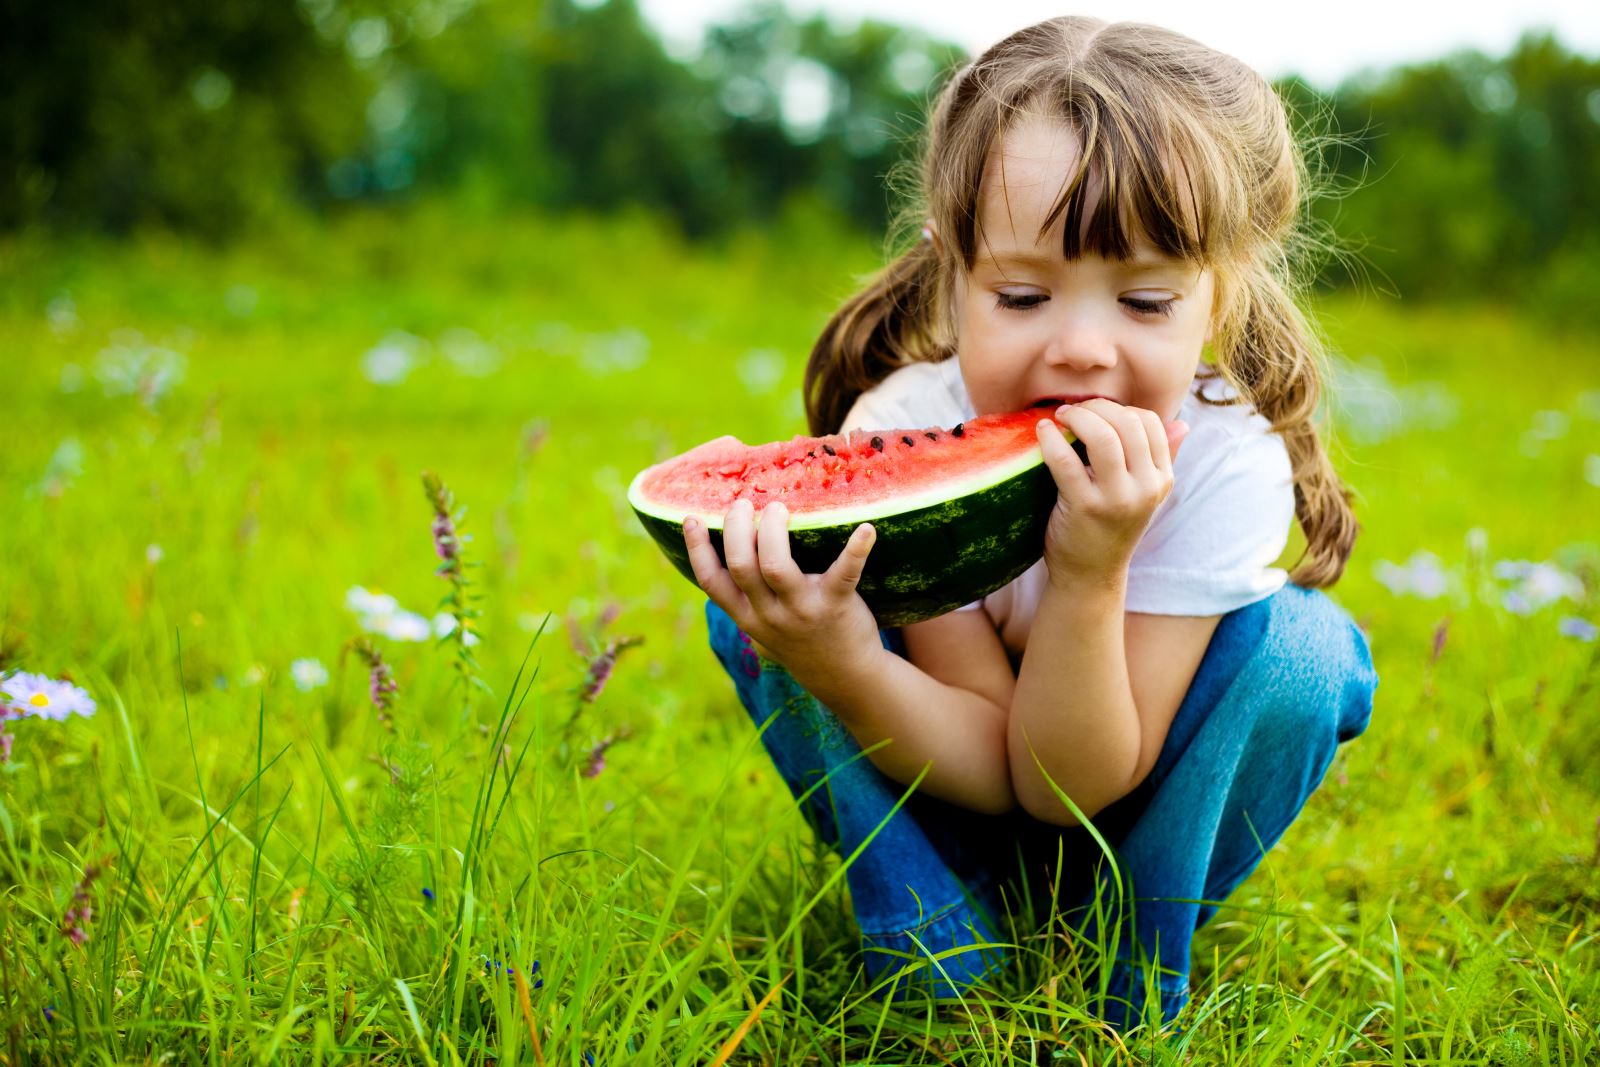 Tầm quan trọng của dinh dưỡng trong việc phát triển của trẻ